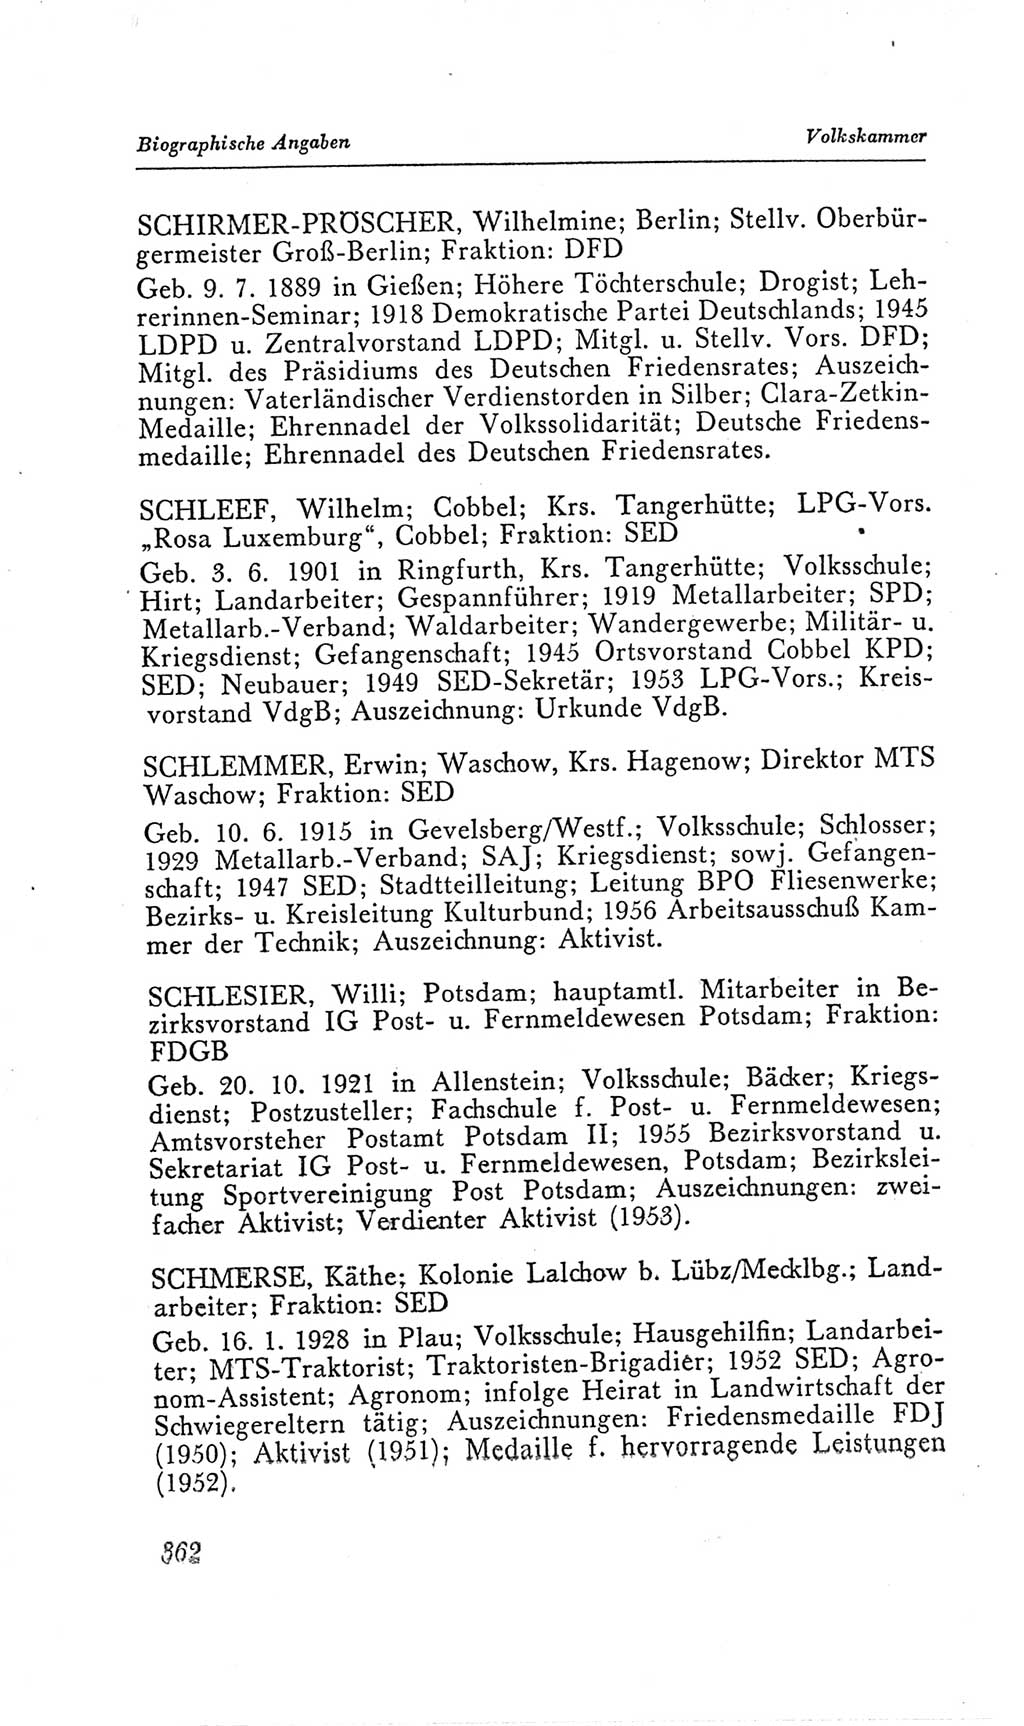 Handbuch der Volkskammer (VK) der Deutschen Demokratischen Republik (DDR), 2. Wahlperiode 1954-1958, Seite 362 (Hdb. VK. DDR, 2. WP. 1954-1958, S. 362)